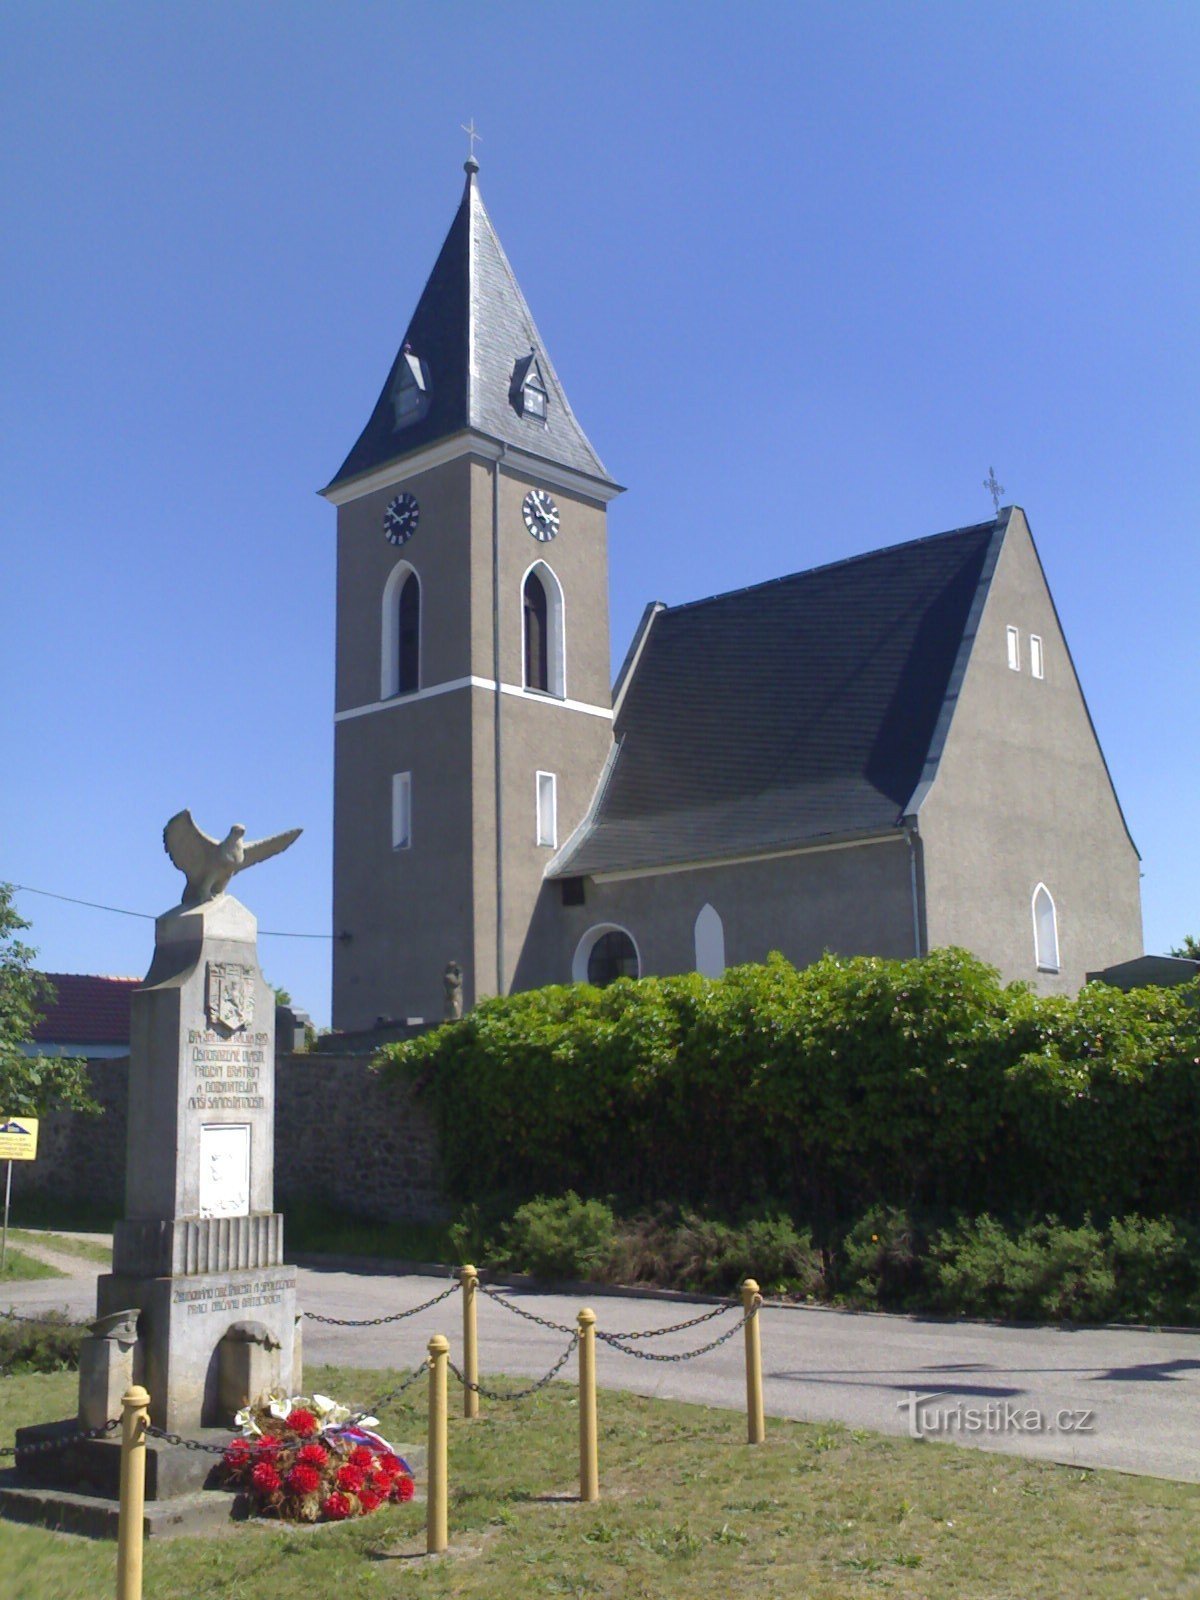 Dríteč - kerk van St. Petrus en Paulus